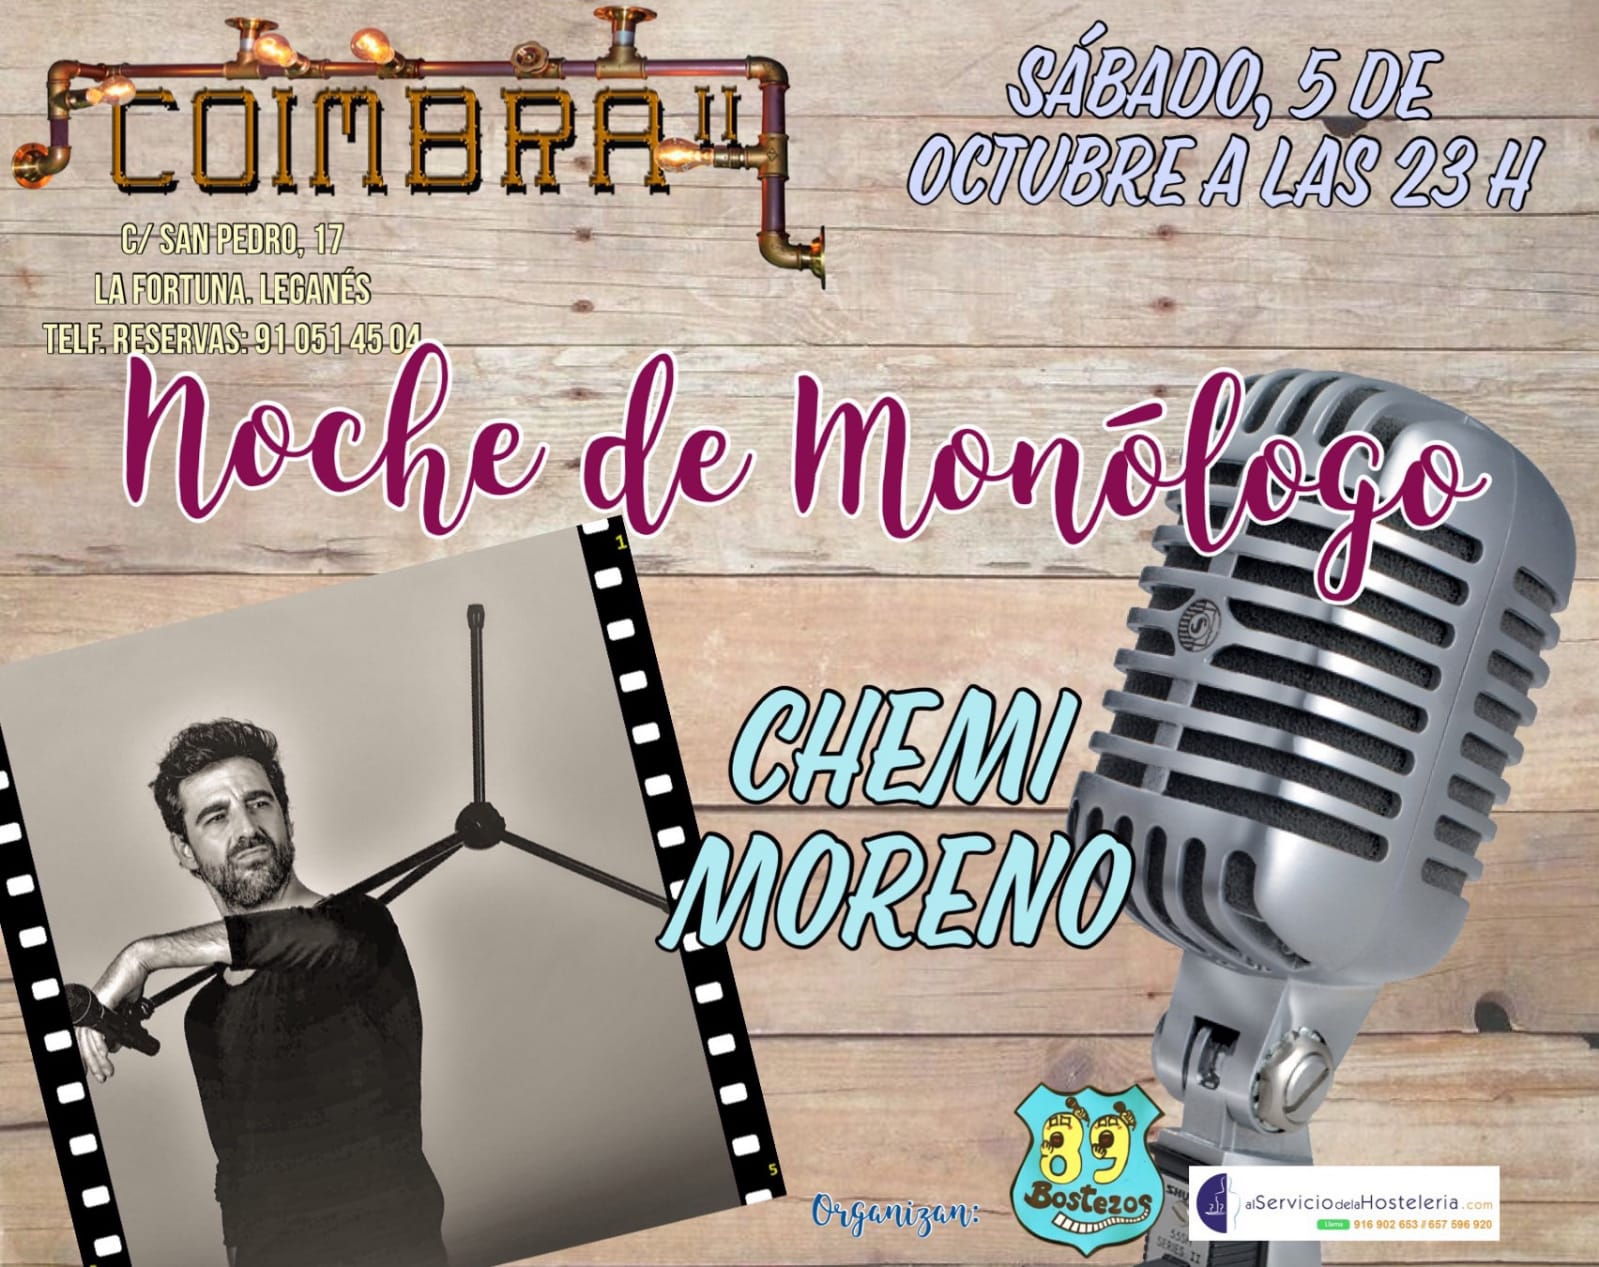 Monólogo en el Coimbra con Chemi Moreno